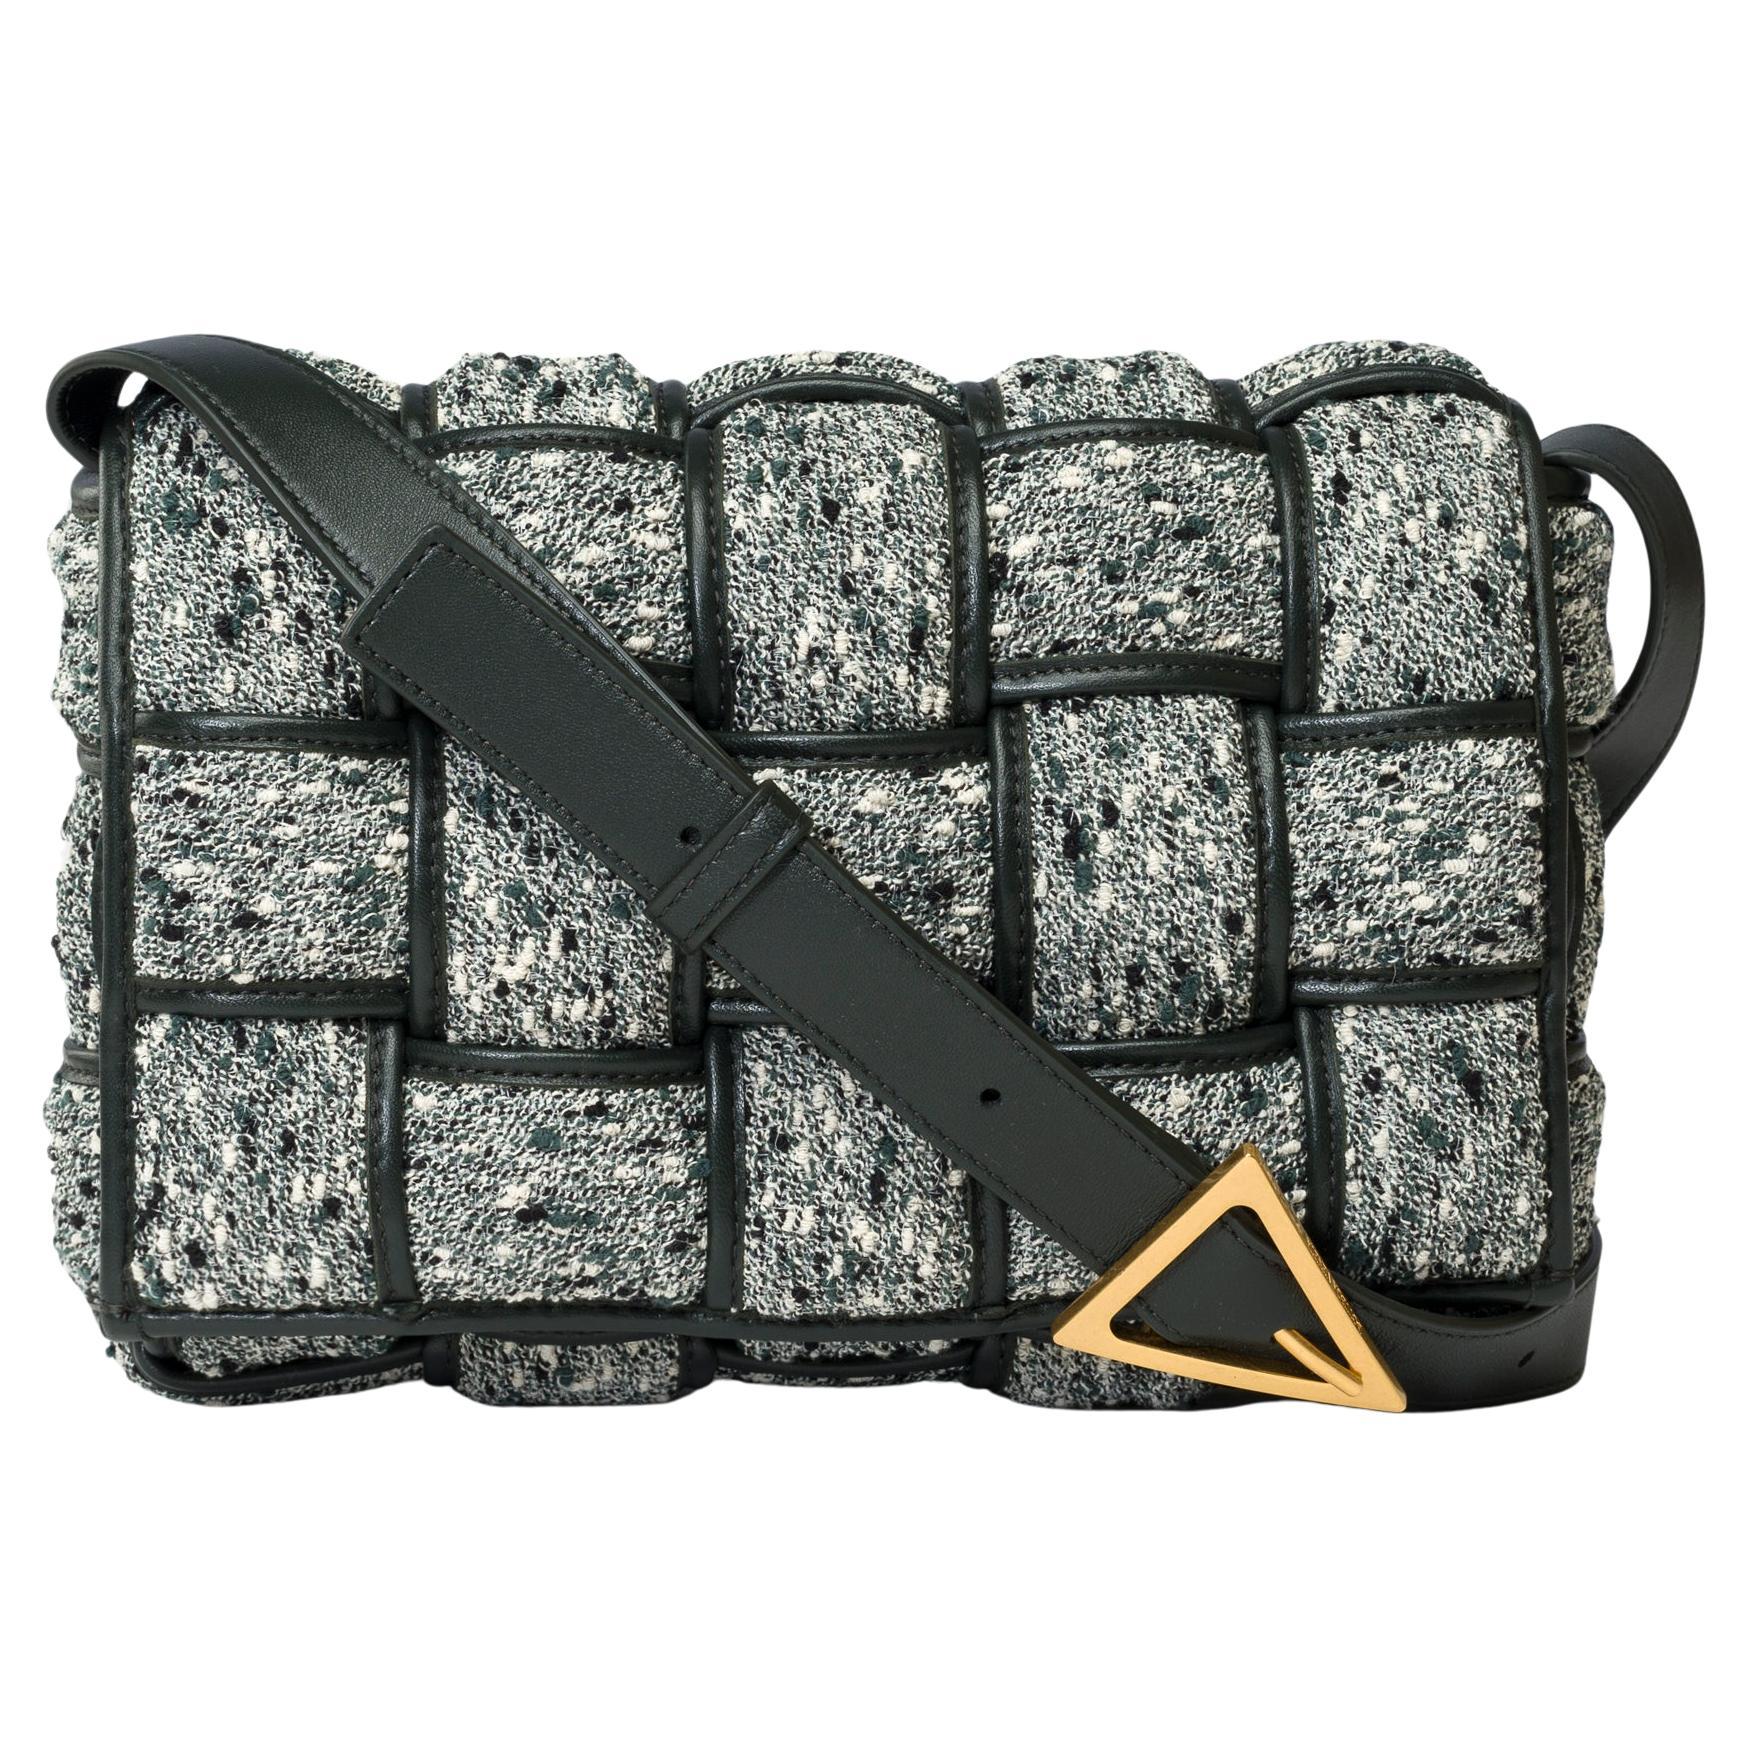 Bottega Veneta Cassette 25 shoulder bag in grey and green Tweed, GHW For Sale